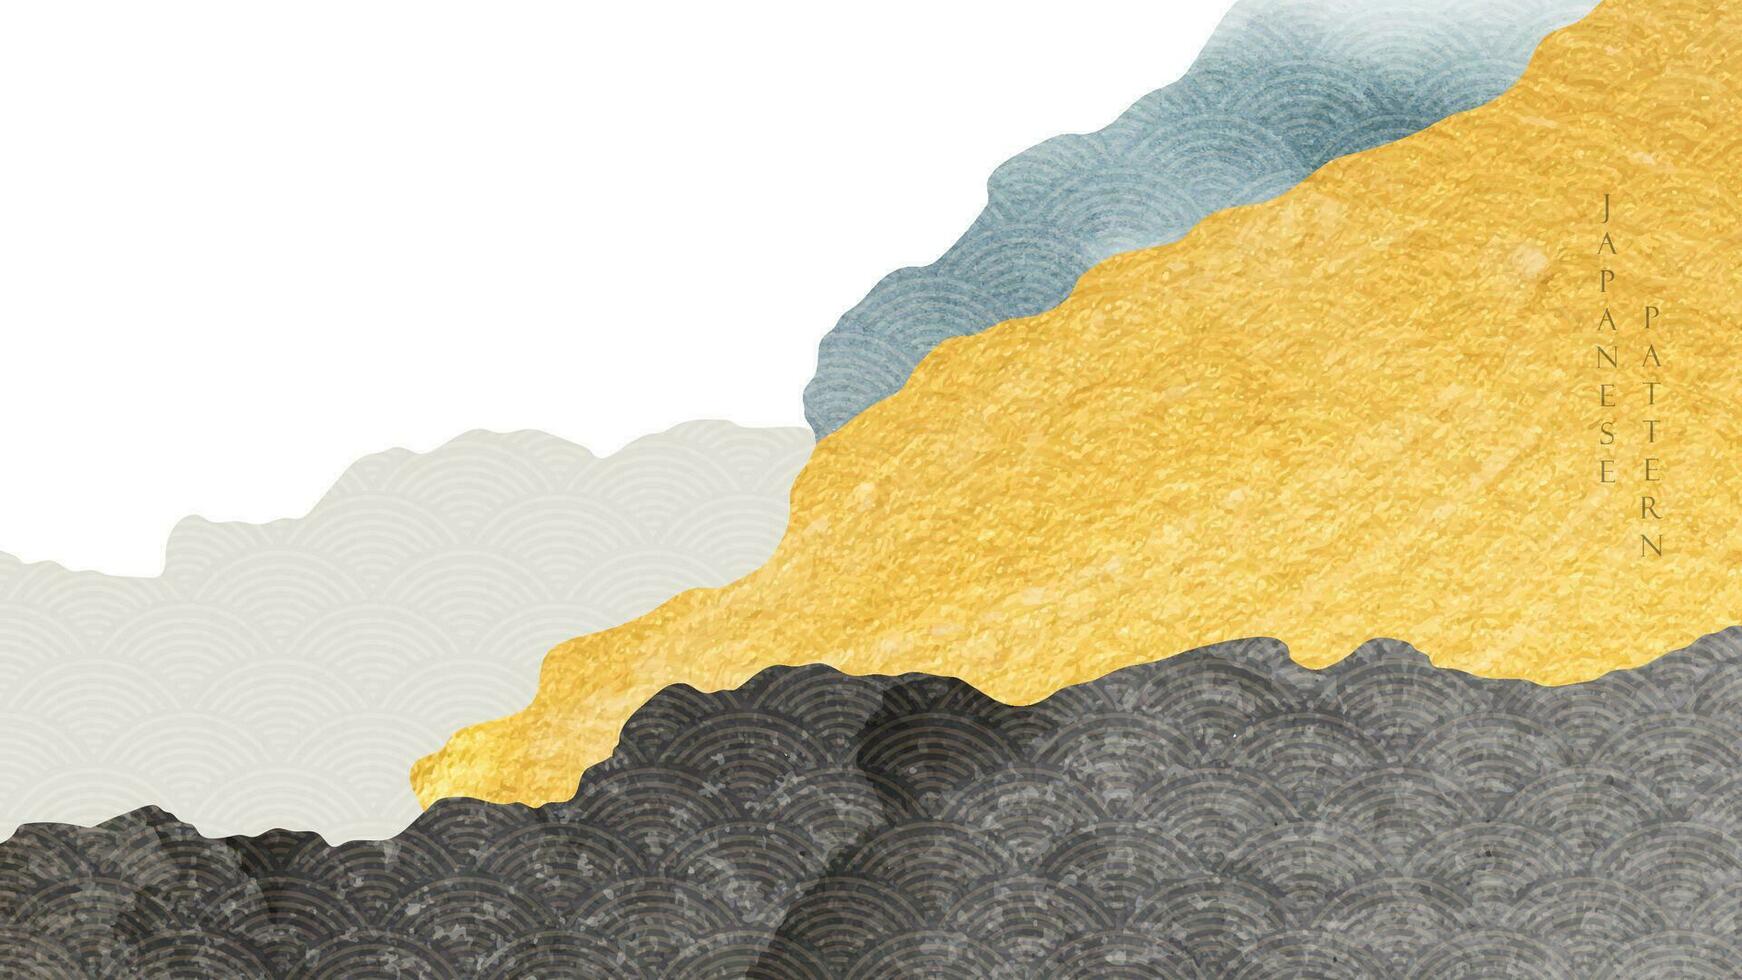 fond de paysage abstrait avec vecteur de texture or et noir. conception de bannière de forêt de montagne avec motif de vague japonais dans un style vintage. décoration d'art naturel.